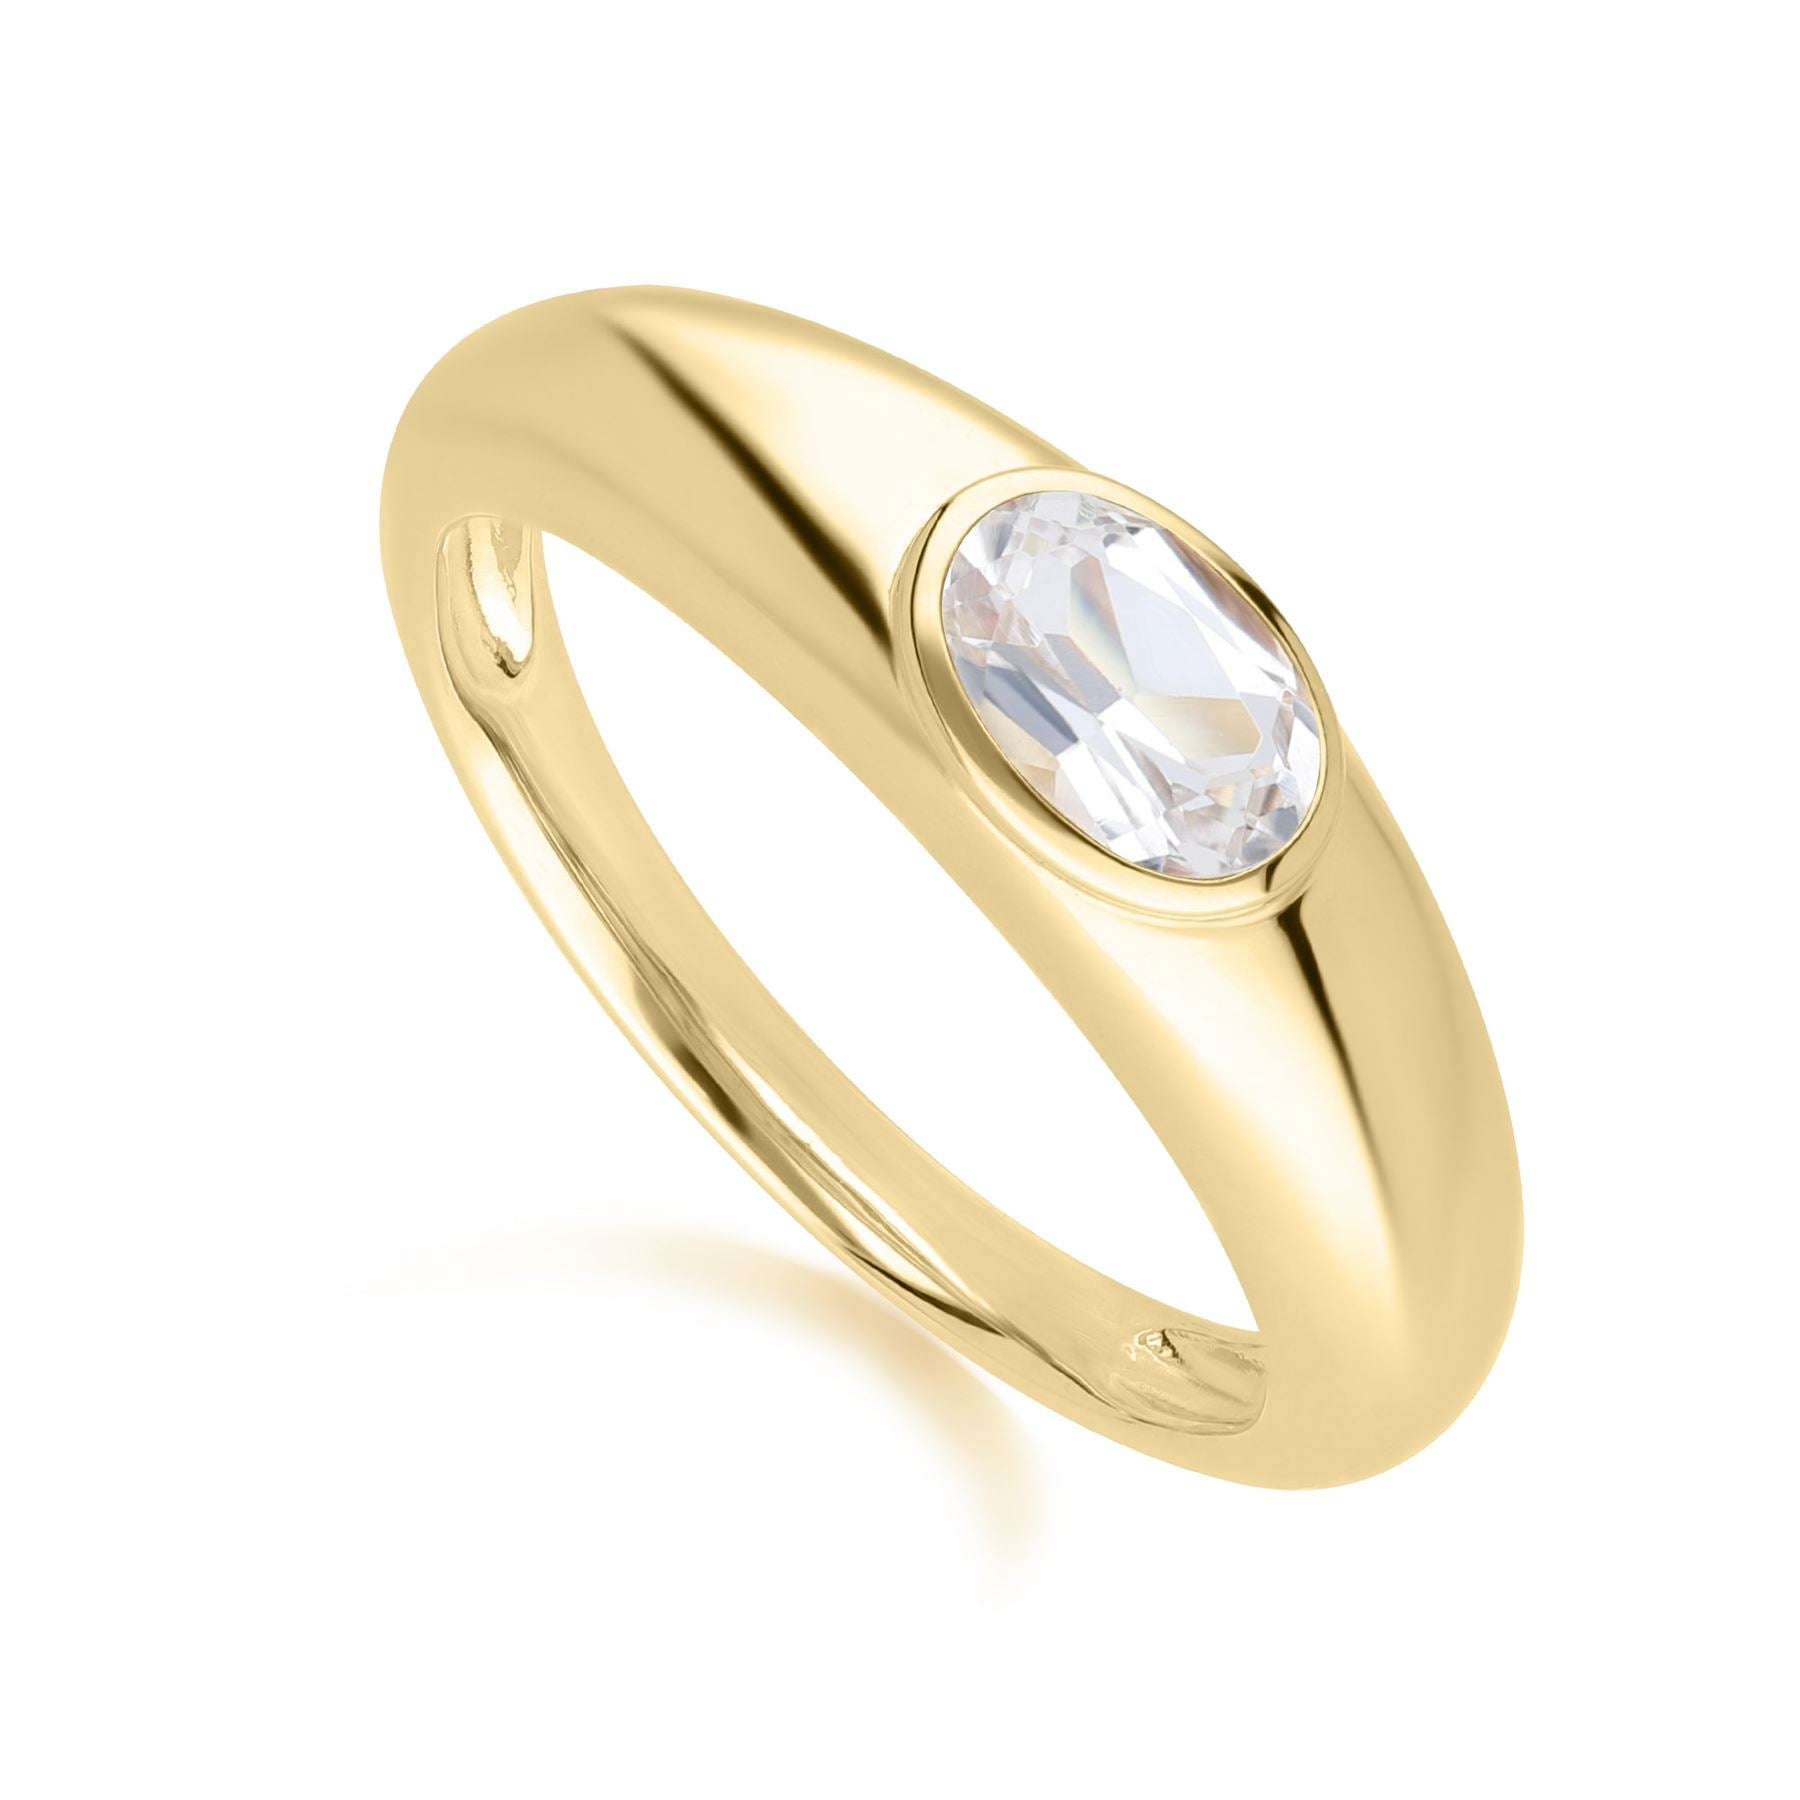 Moderno classico anello con topazio bianco ovale in argento placcato oro 18 carati